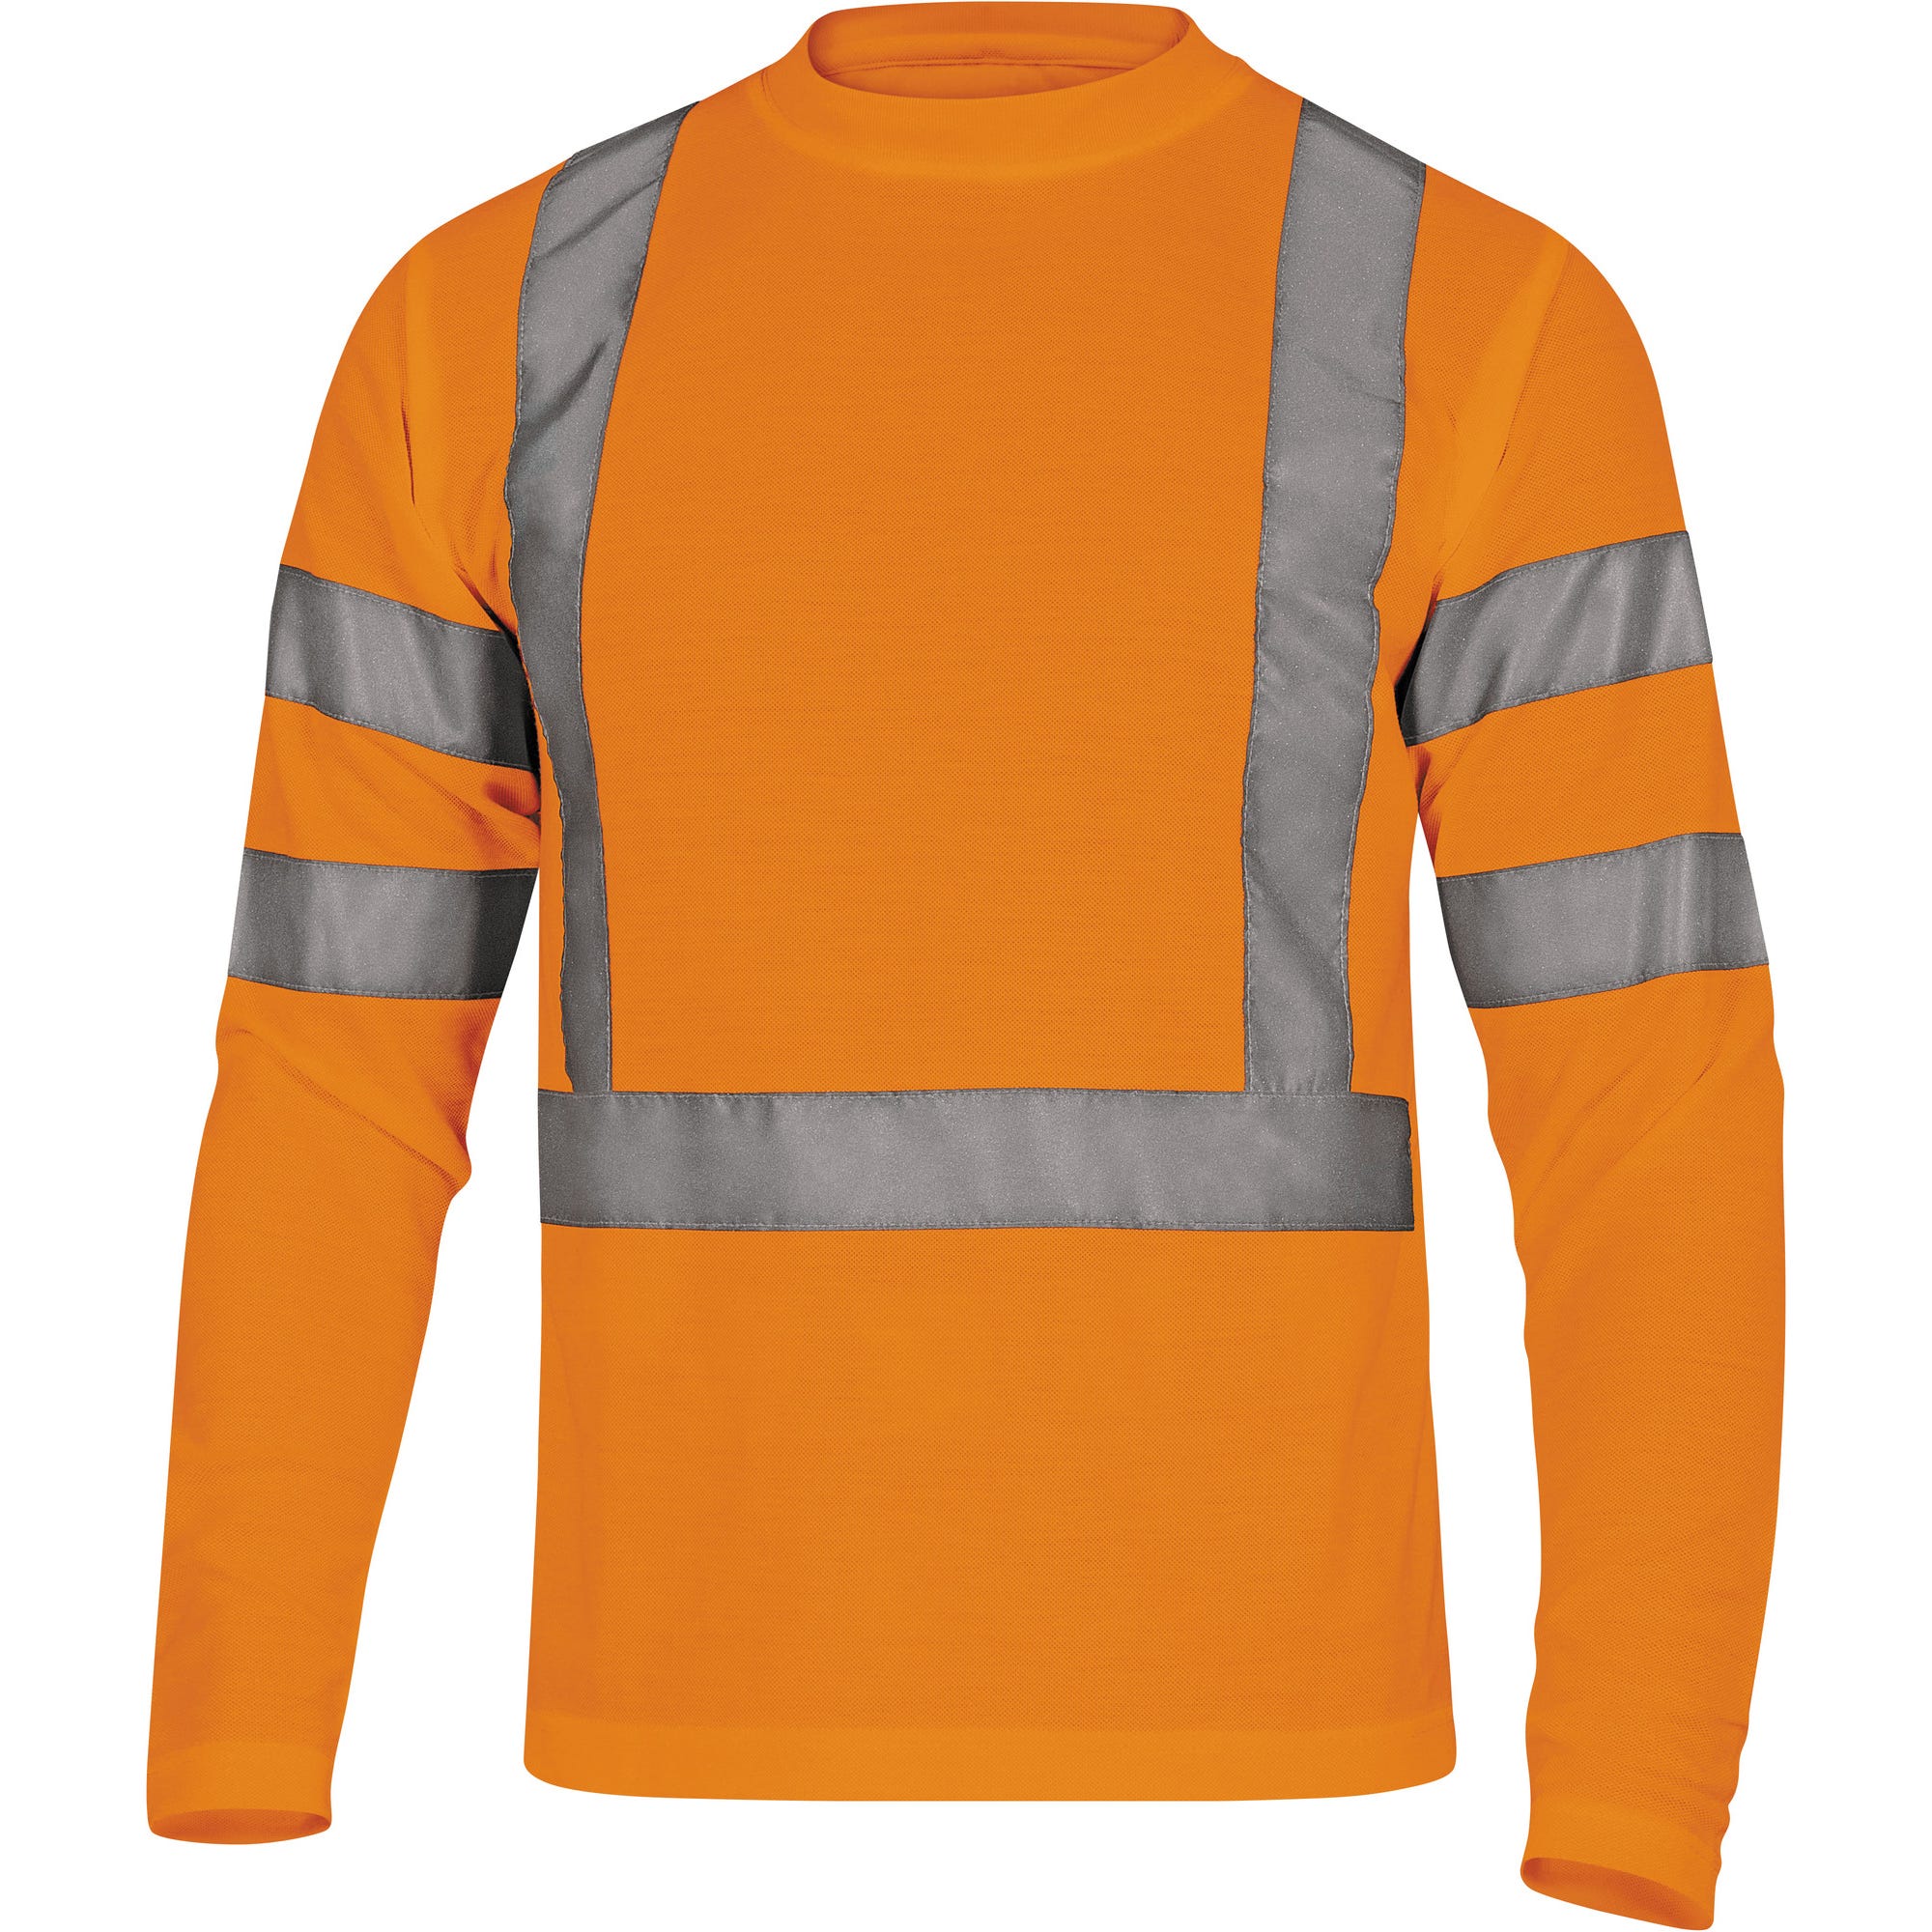 Tee shirt haute visibilité à manches longues orange T.XL - DELTA PLUS 0